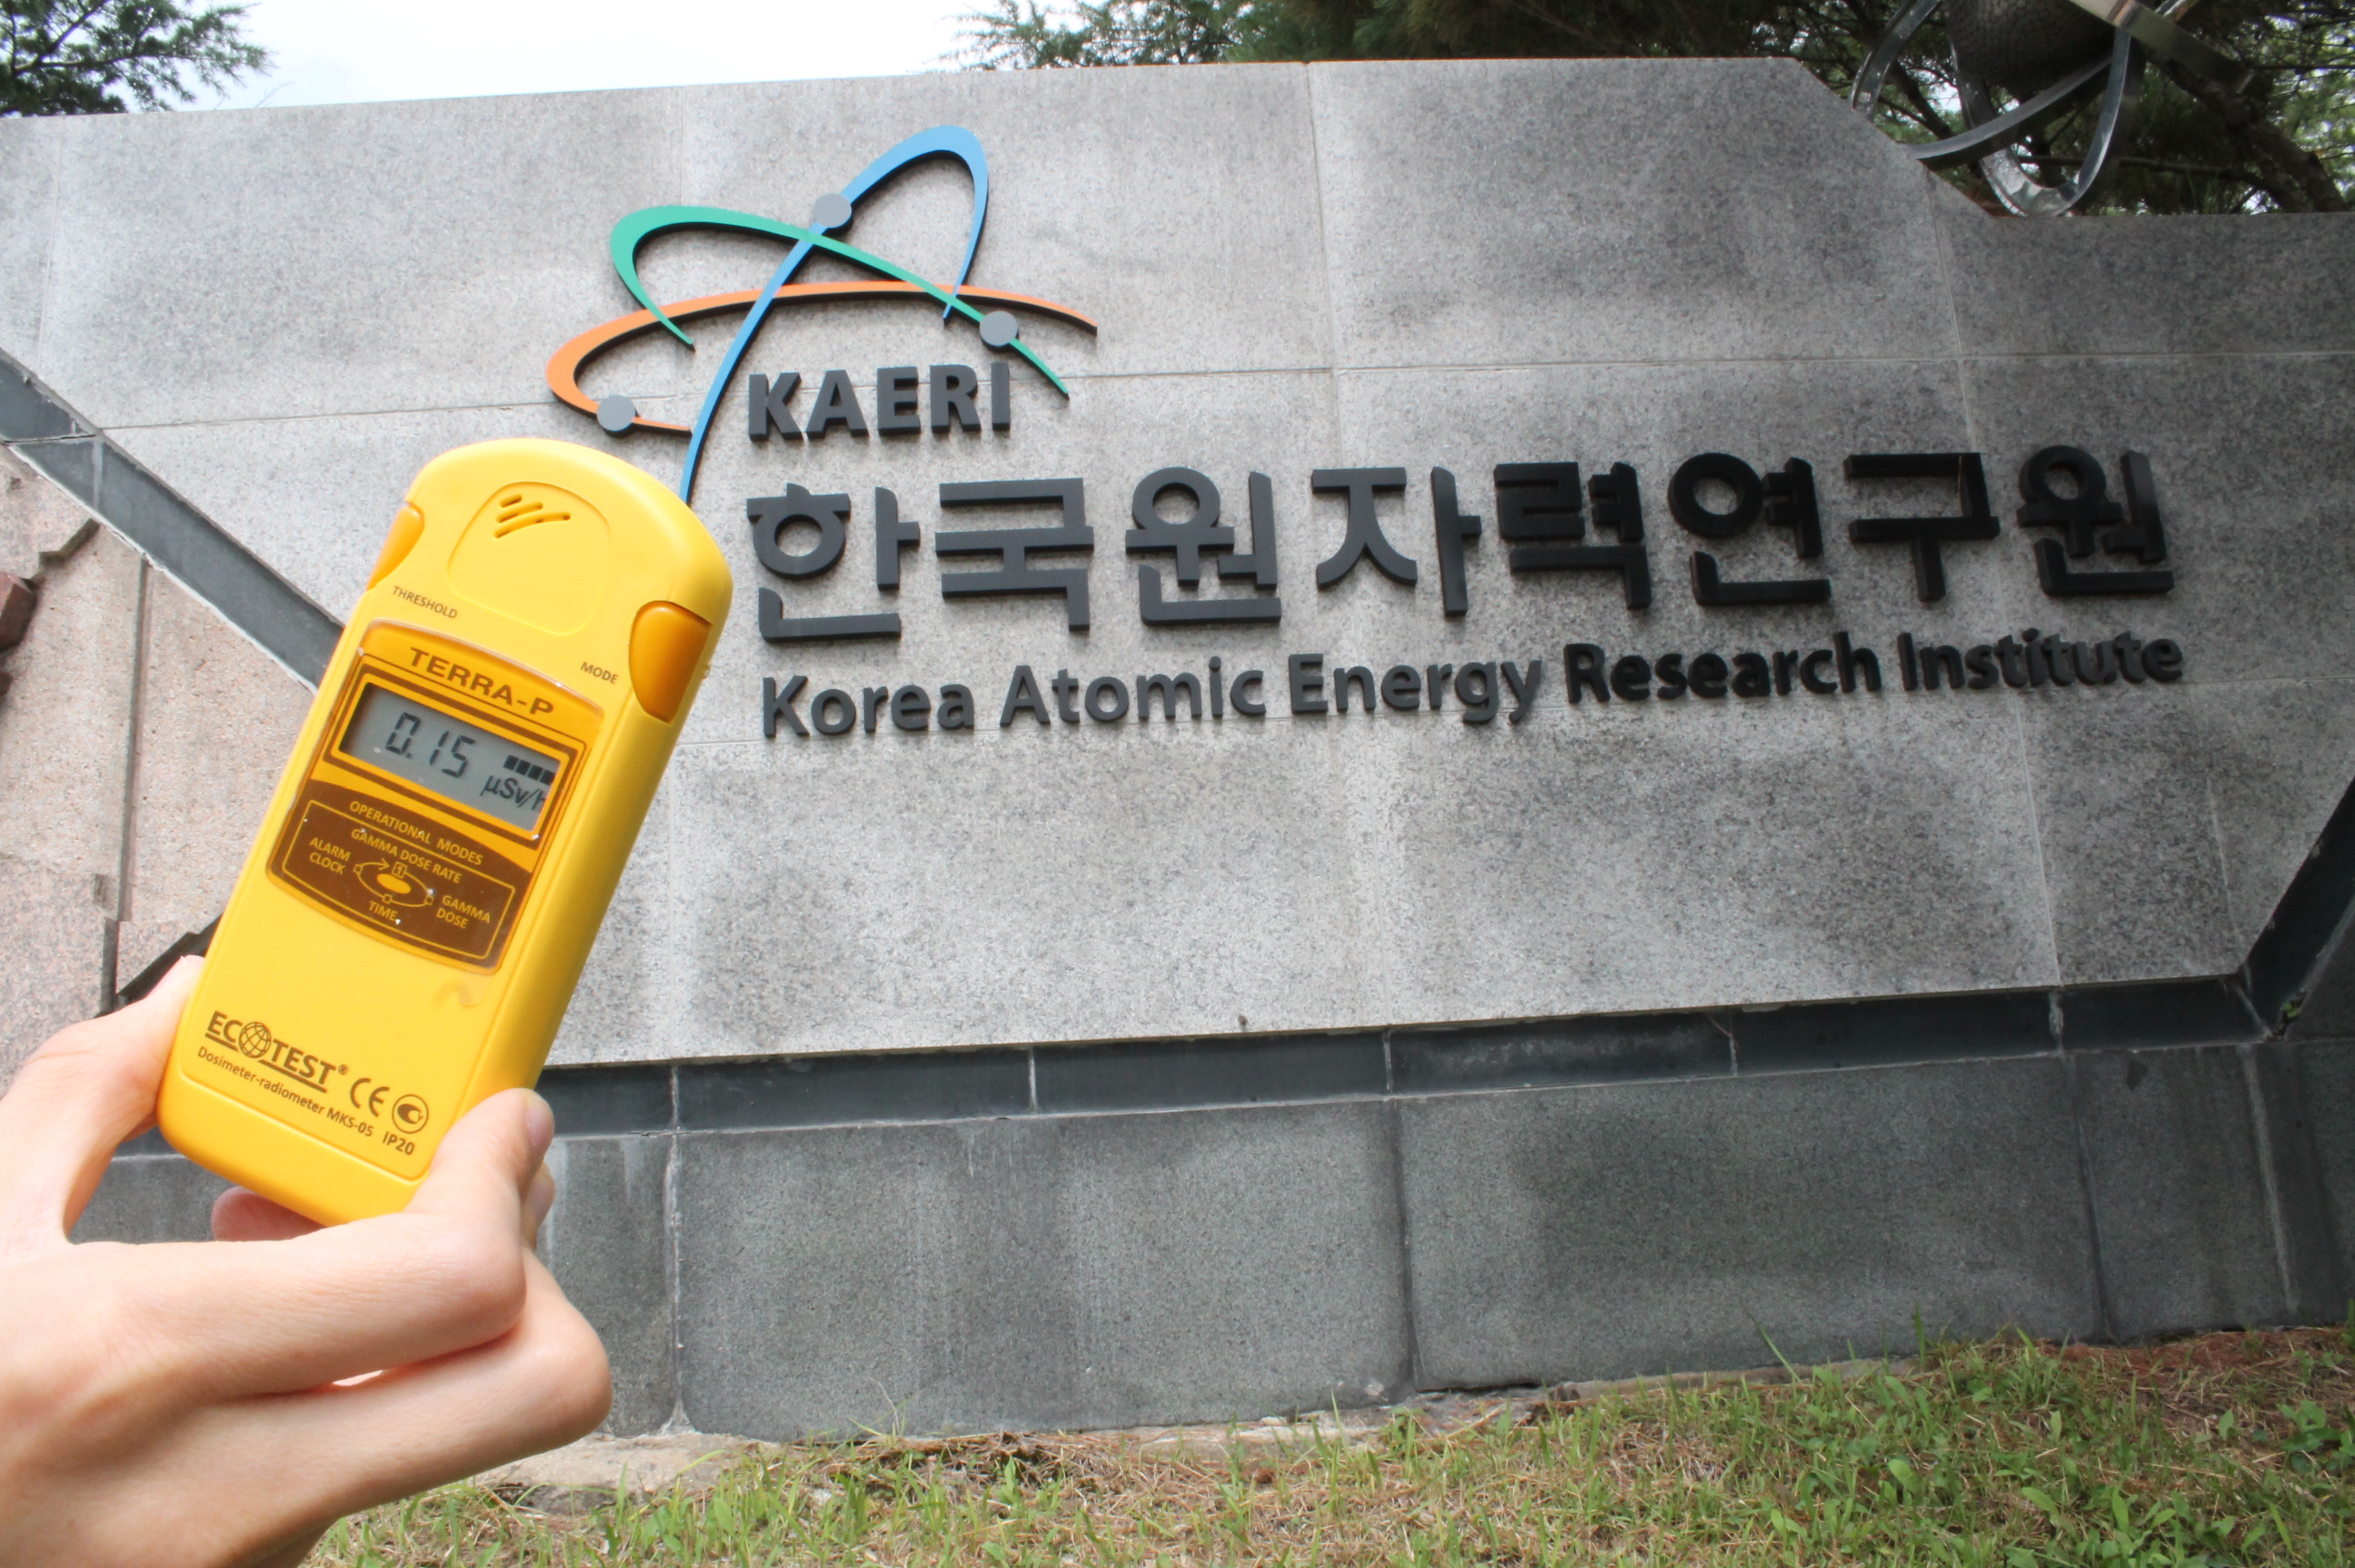 한국원자력연구원에는 연구용 원자로 '하나로'가 있다. 이게 다가 아니다. 중저준위 방사능폐기물 약 3만 드럼을 보관하고 있으며, 사용후핵연료봉 1699개(약 3.4톤)도 있다. 